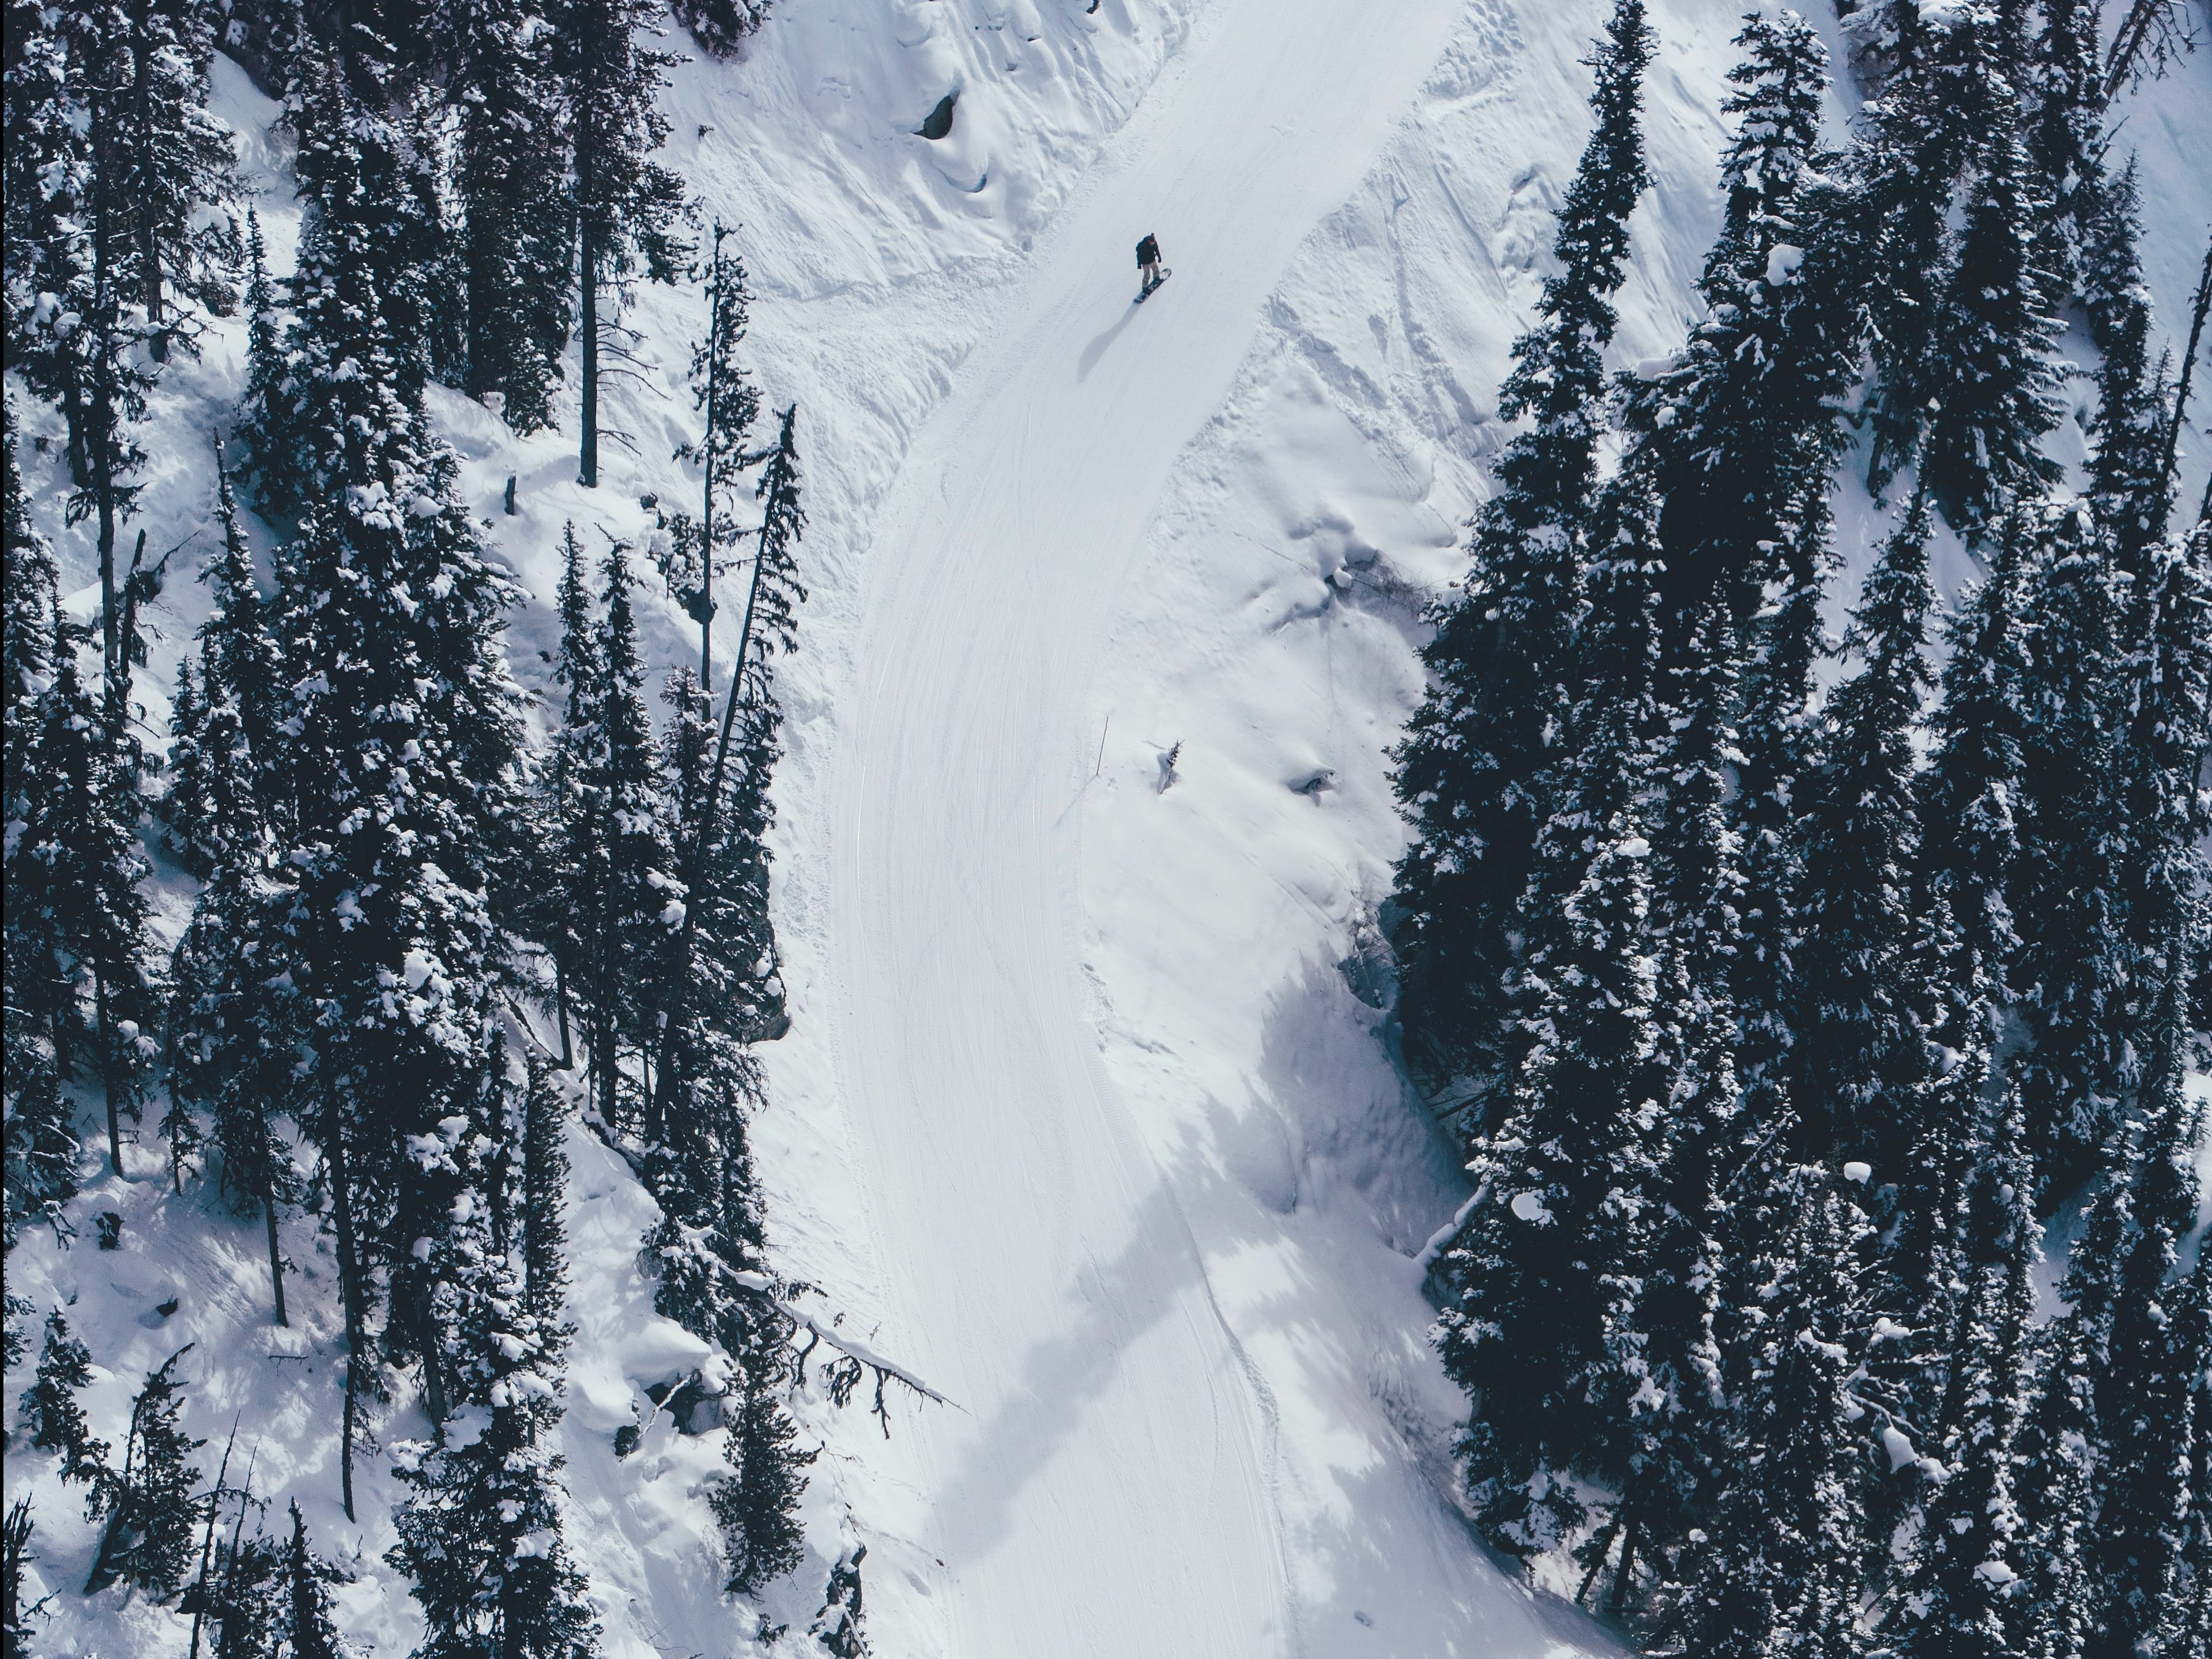 Ski Canada Safety Tips